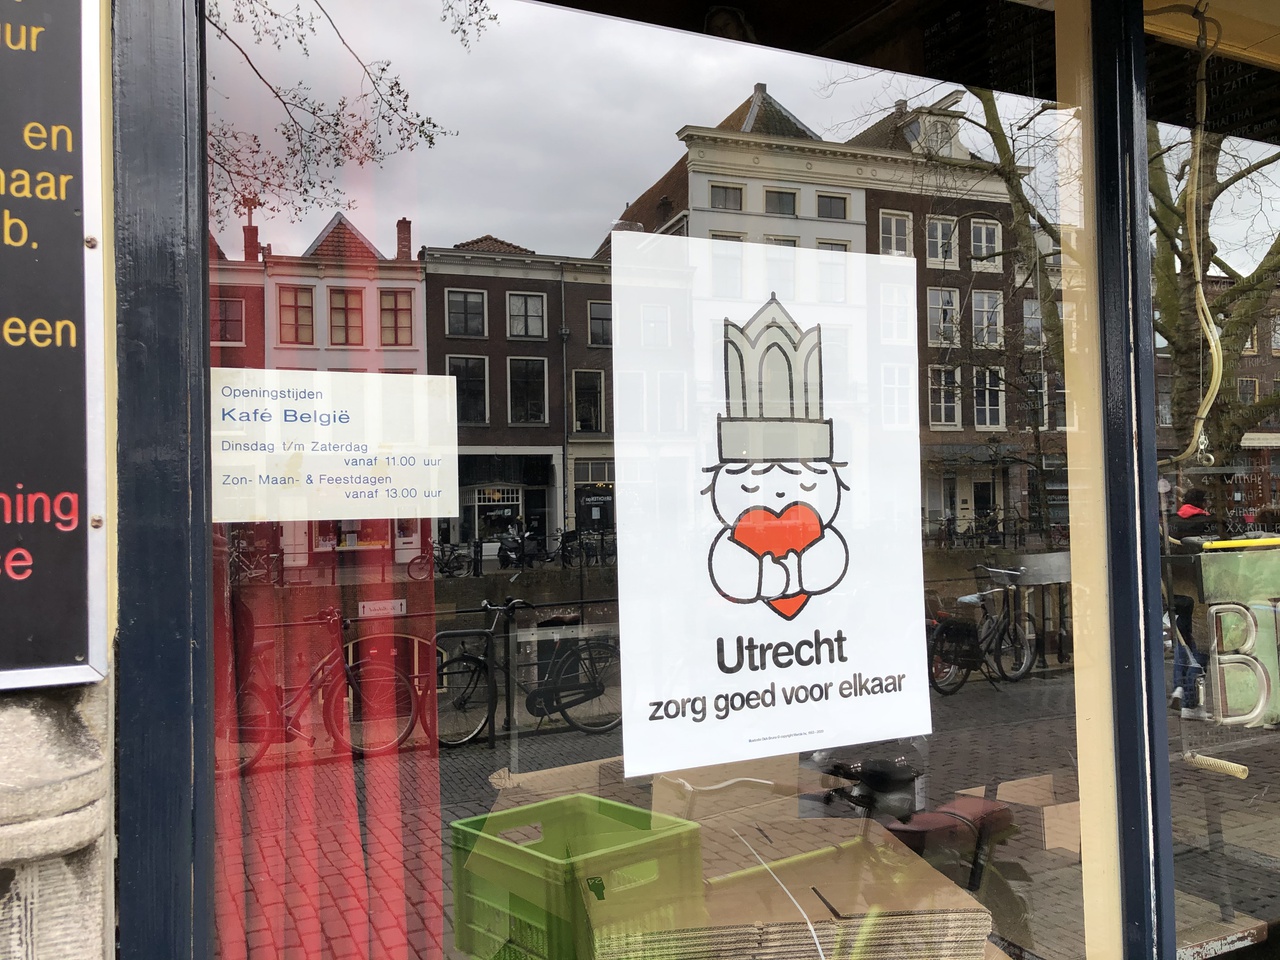 2/6 - Het affiche ‘Utrecht zorg goed voor elkaar’ op een van de vele winkelruiten in de stad.